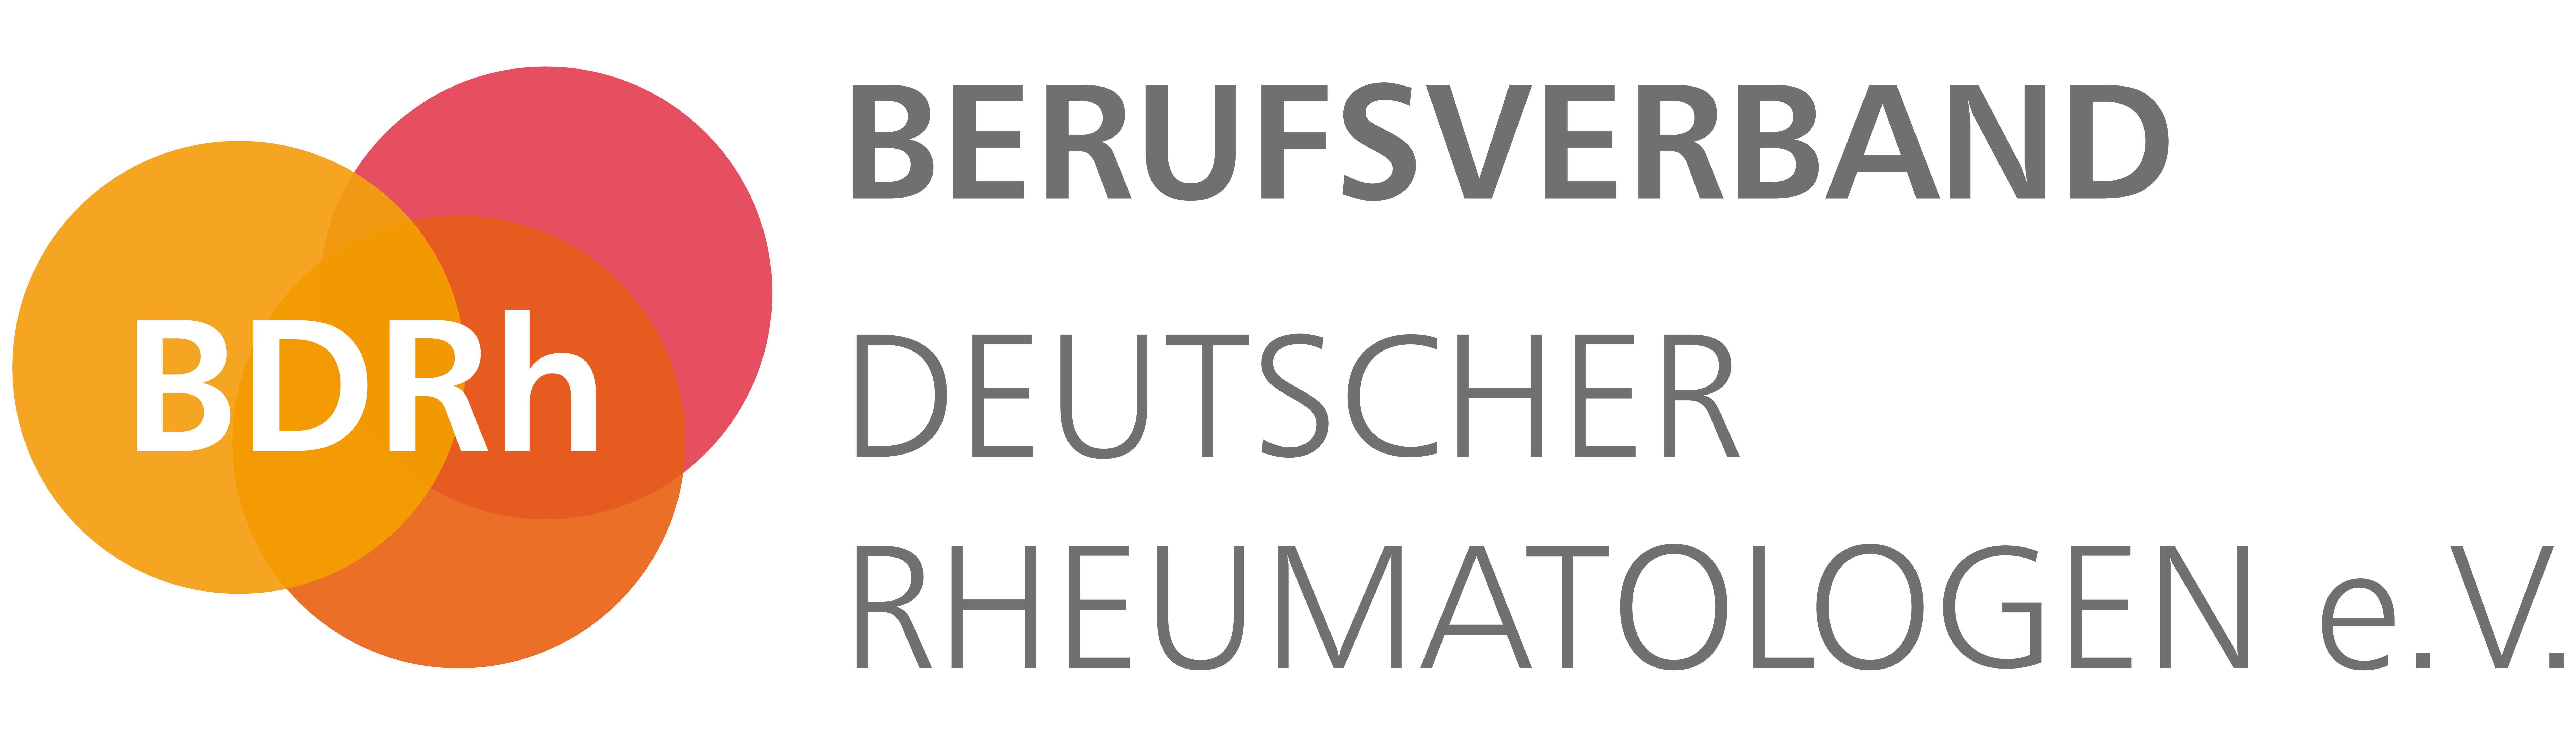 Berufsverband Deutscher Rheumatologen